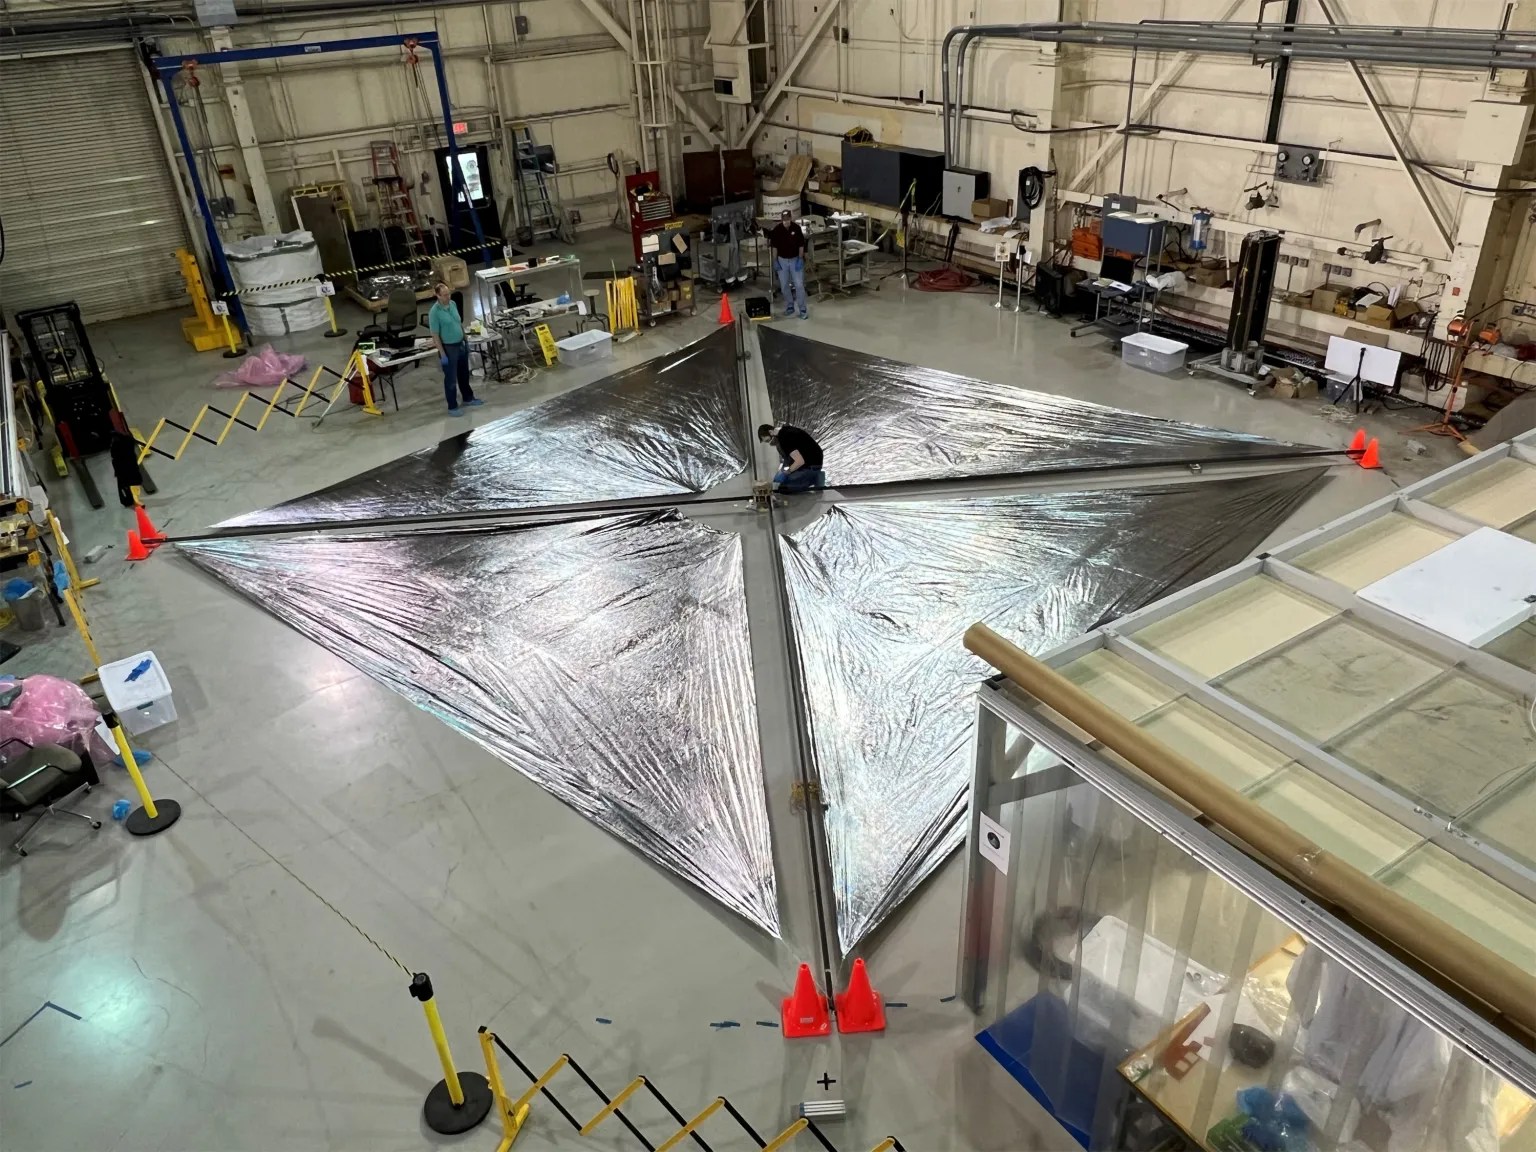 NASA’s New Solar Sail Technology: Media Invitation to Gain Insights